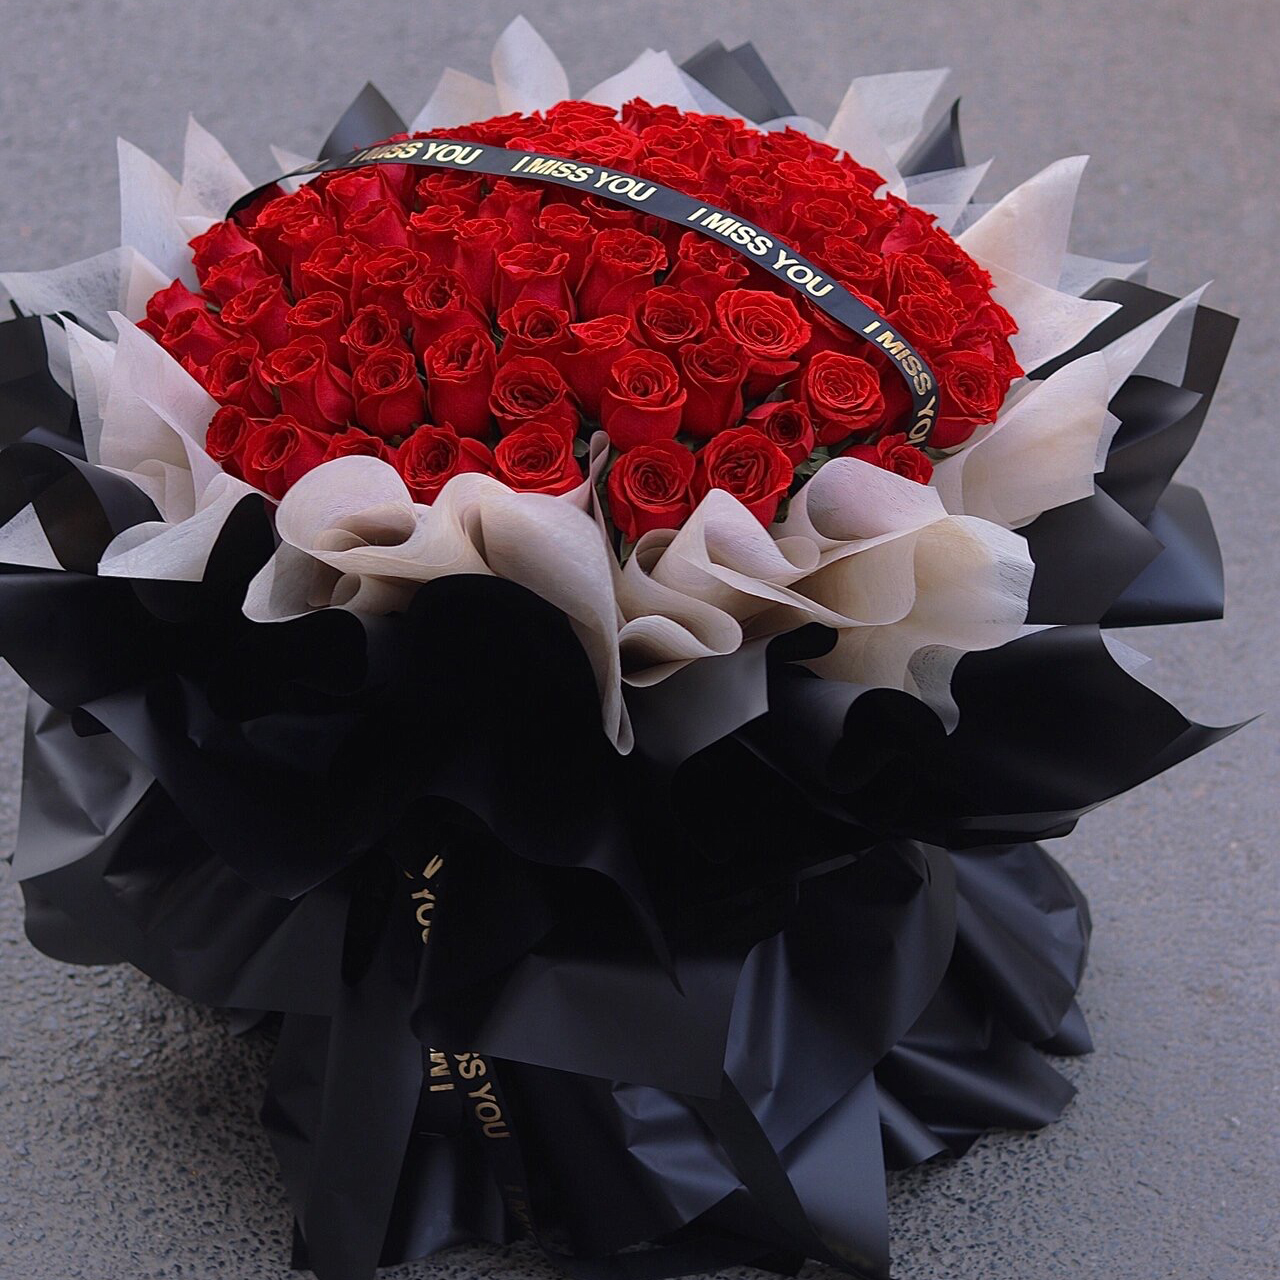 99朵红玫瑰花束深圳花店同城鲜花速递生日纪念日情人节送花求婚